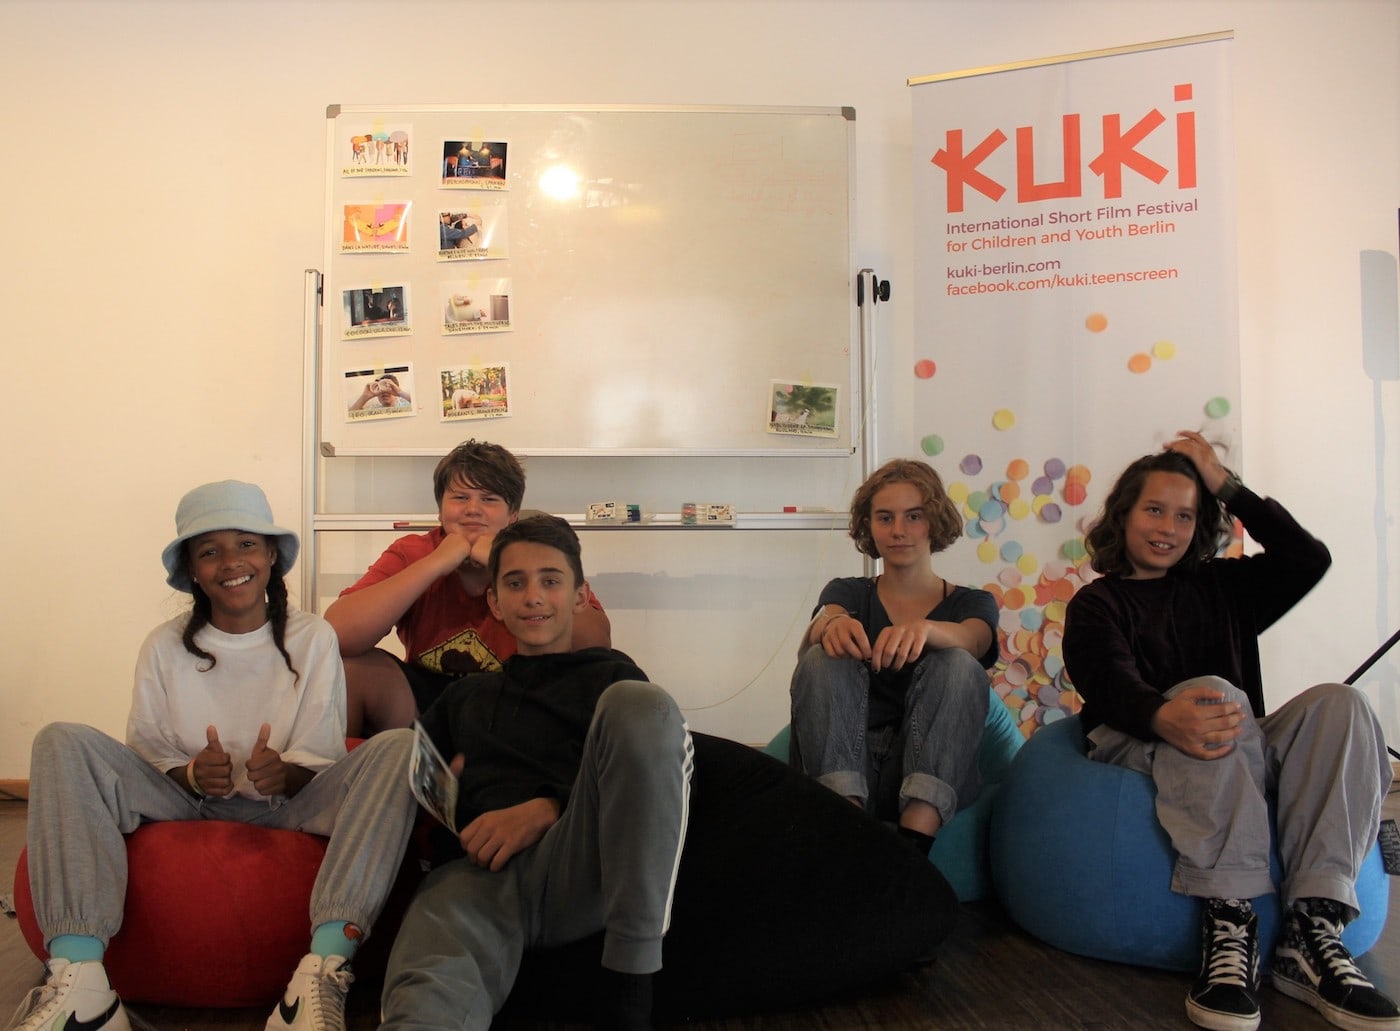 Kommt zum TeenScreen Workshop von KUKI und werdet zu Kurator:innen! // HIMBEER